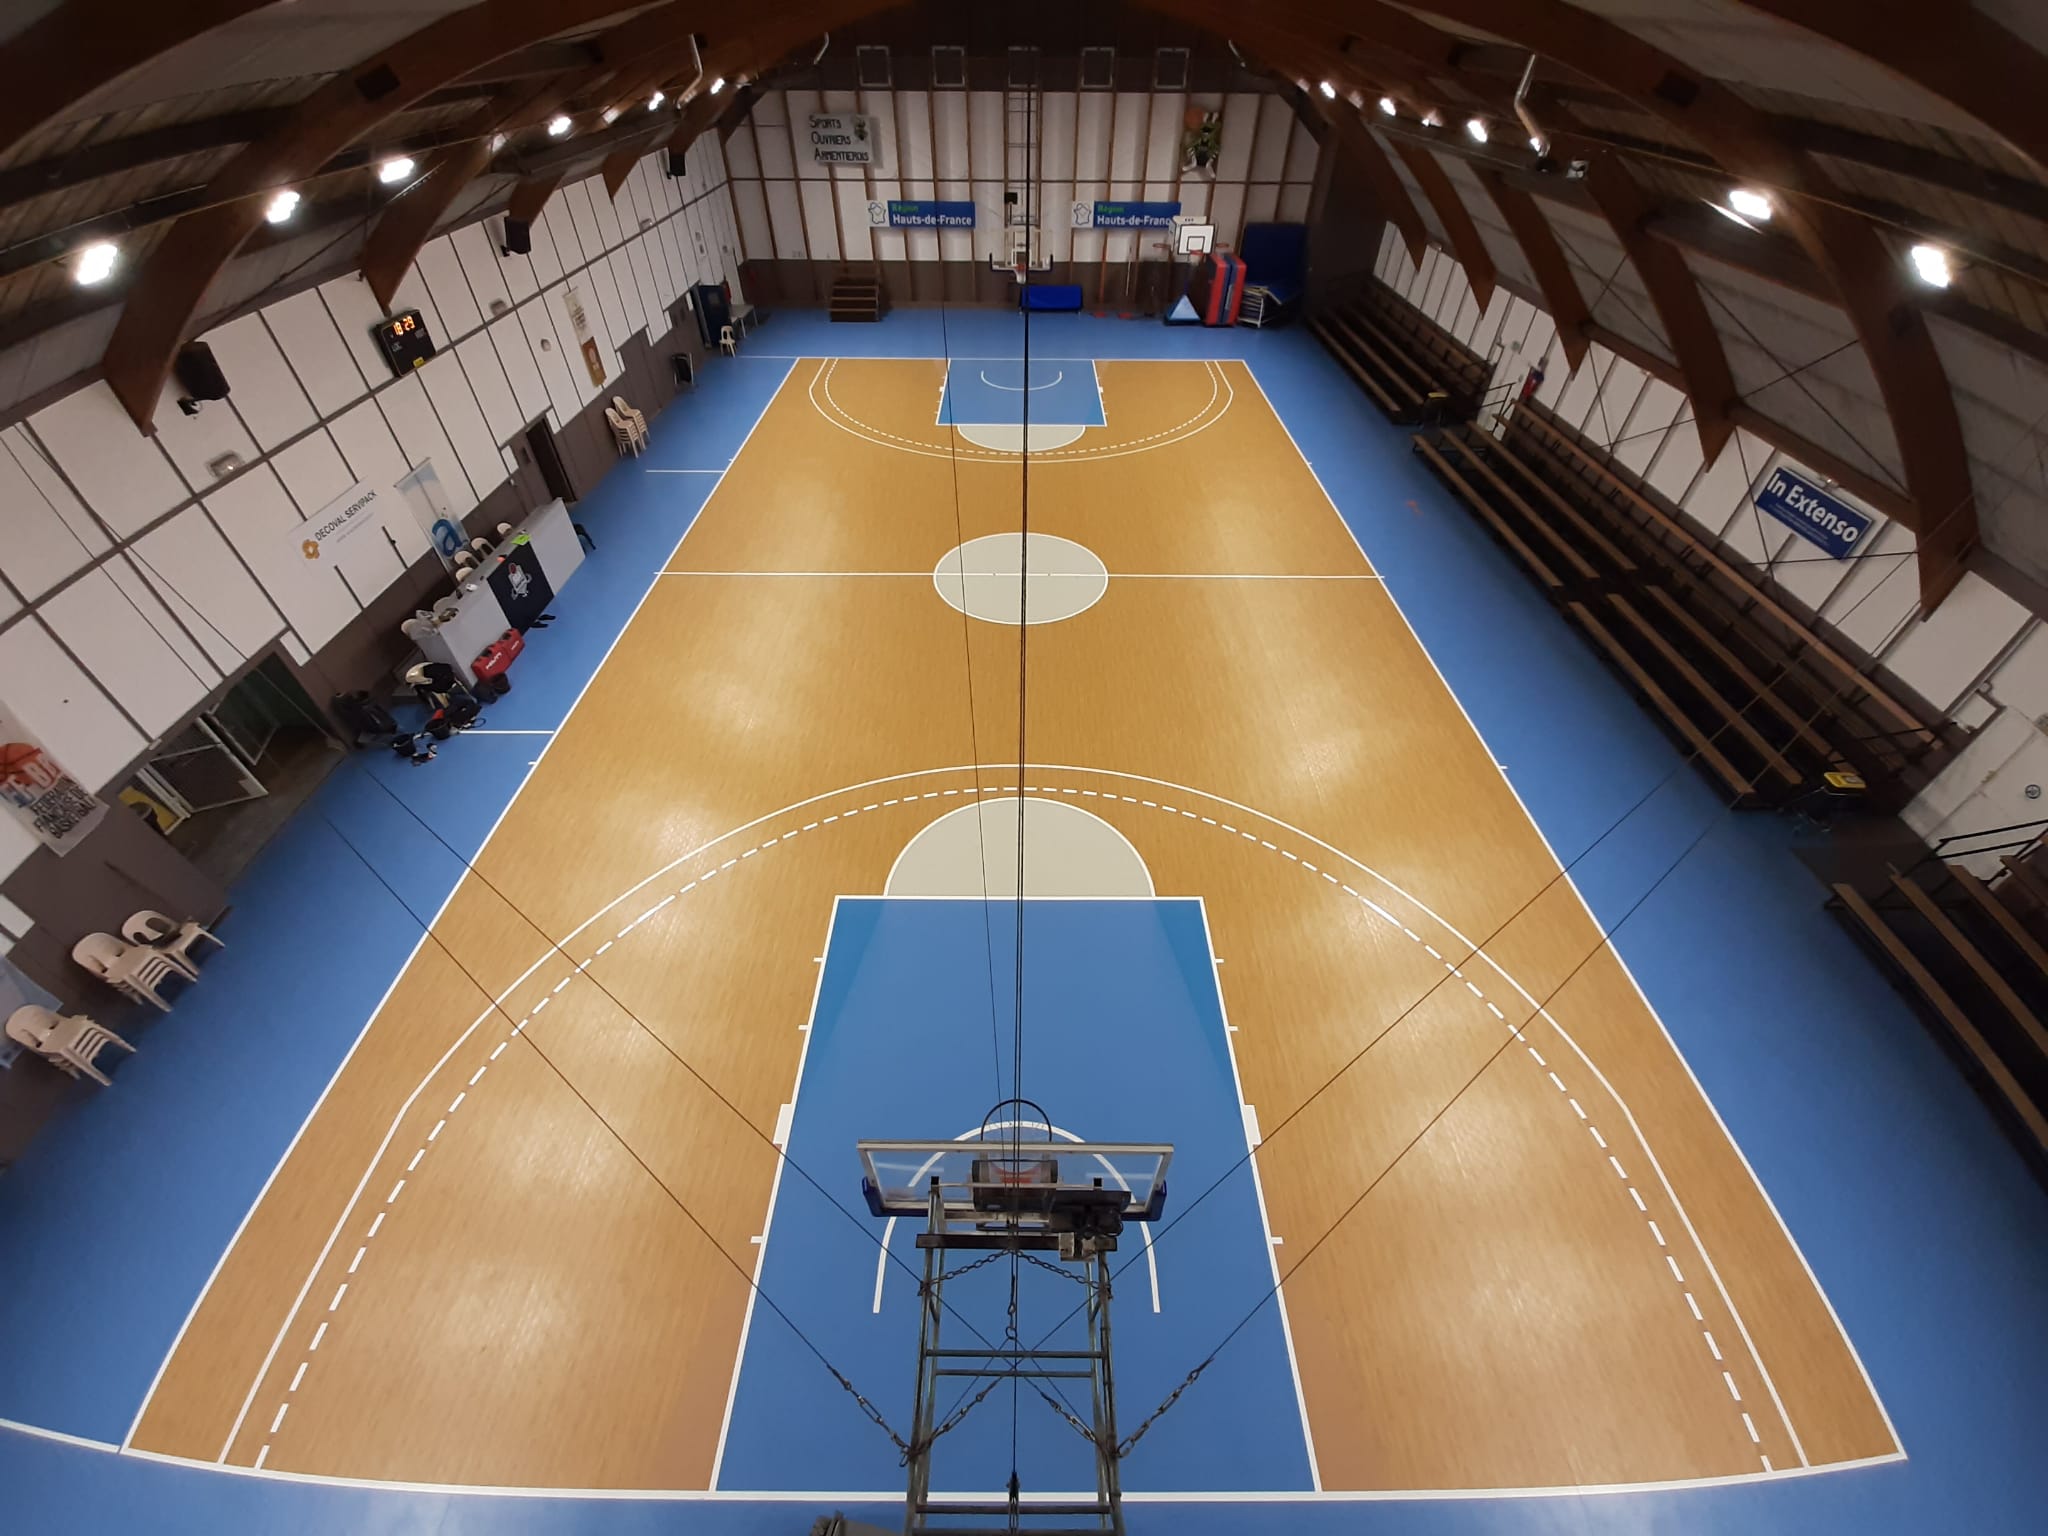 Salle de Basket Ball Armentières (59)